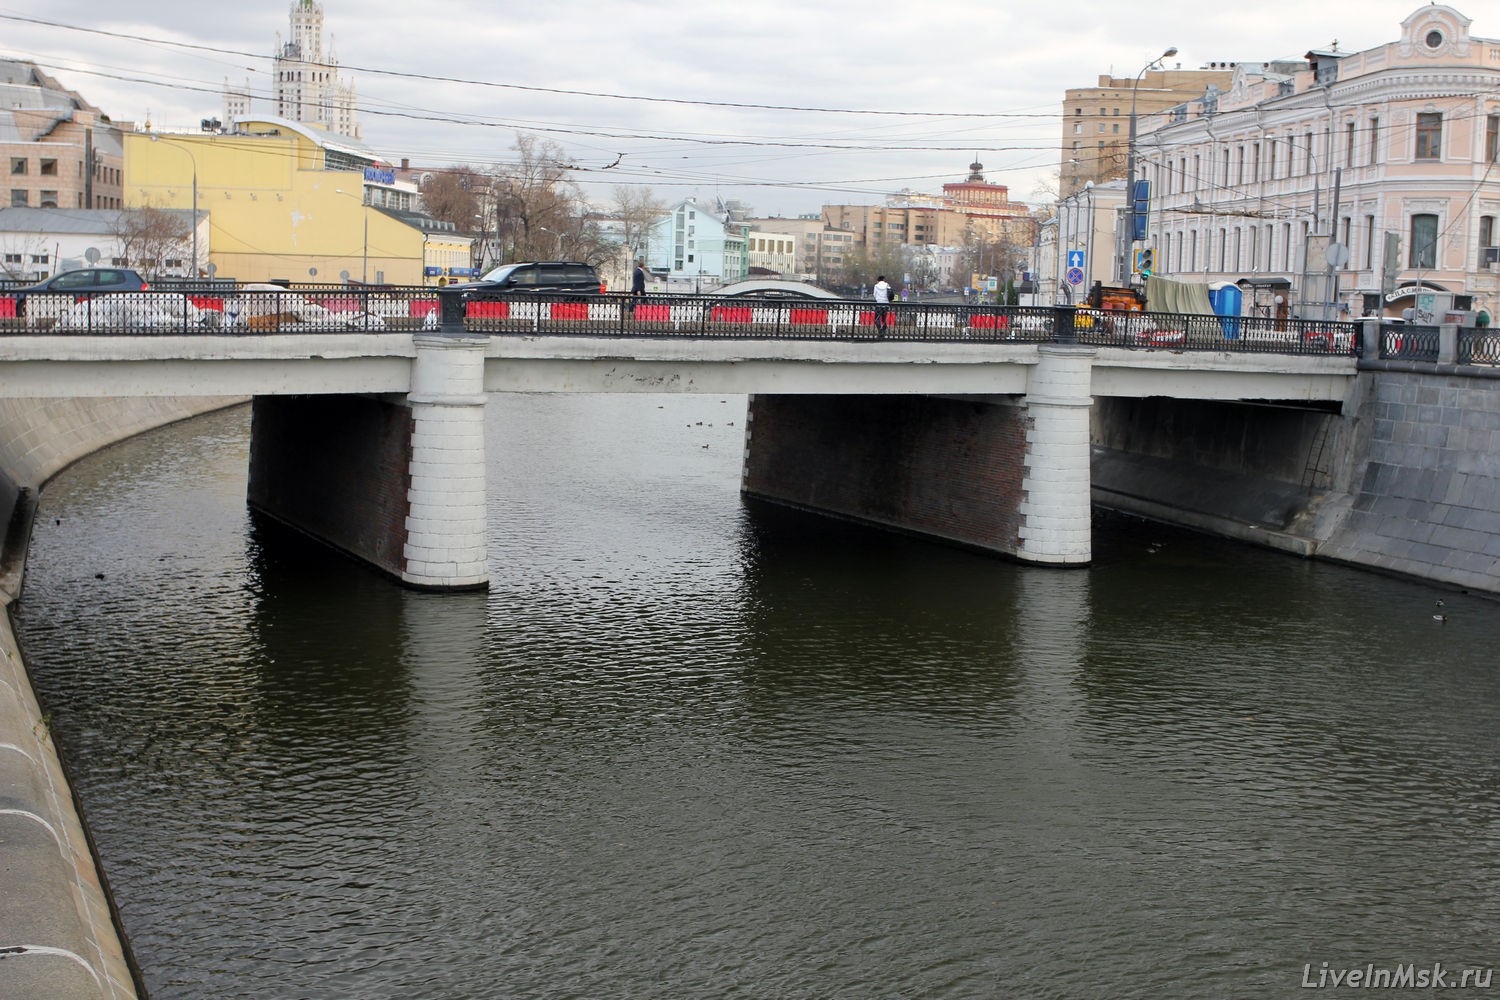 Чугунный мост, фото 2014 года